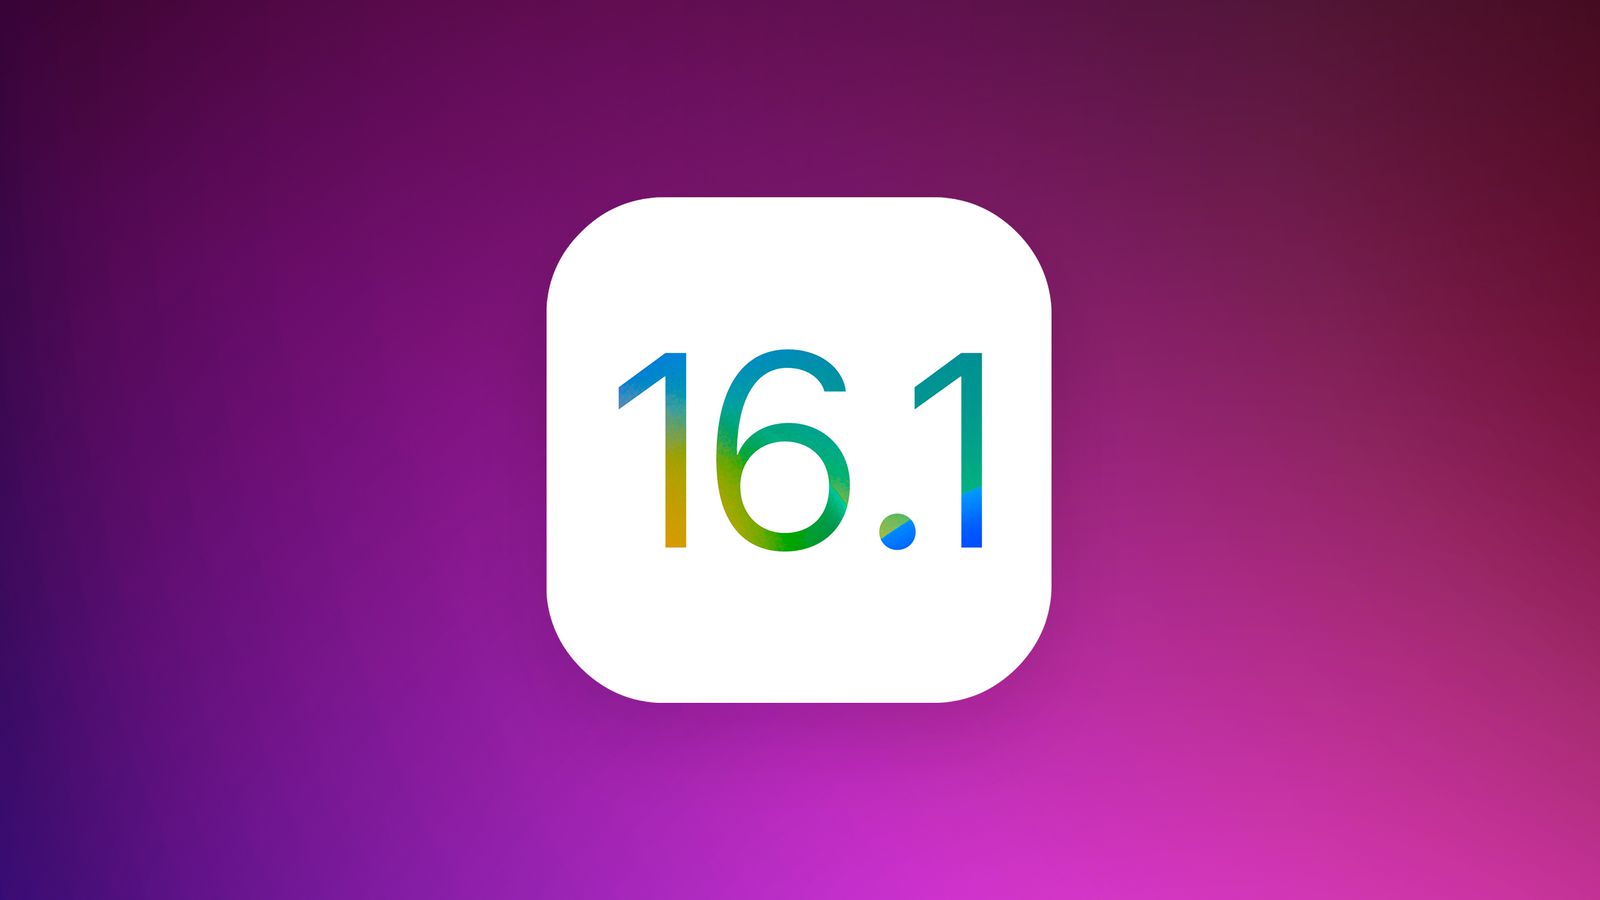 Apple прекратила подписывать iOS 16.1 и iOS 16.1.1